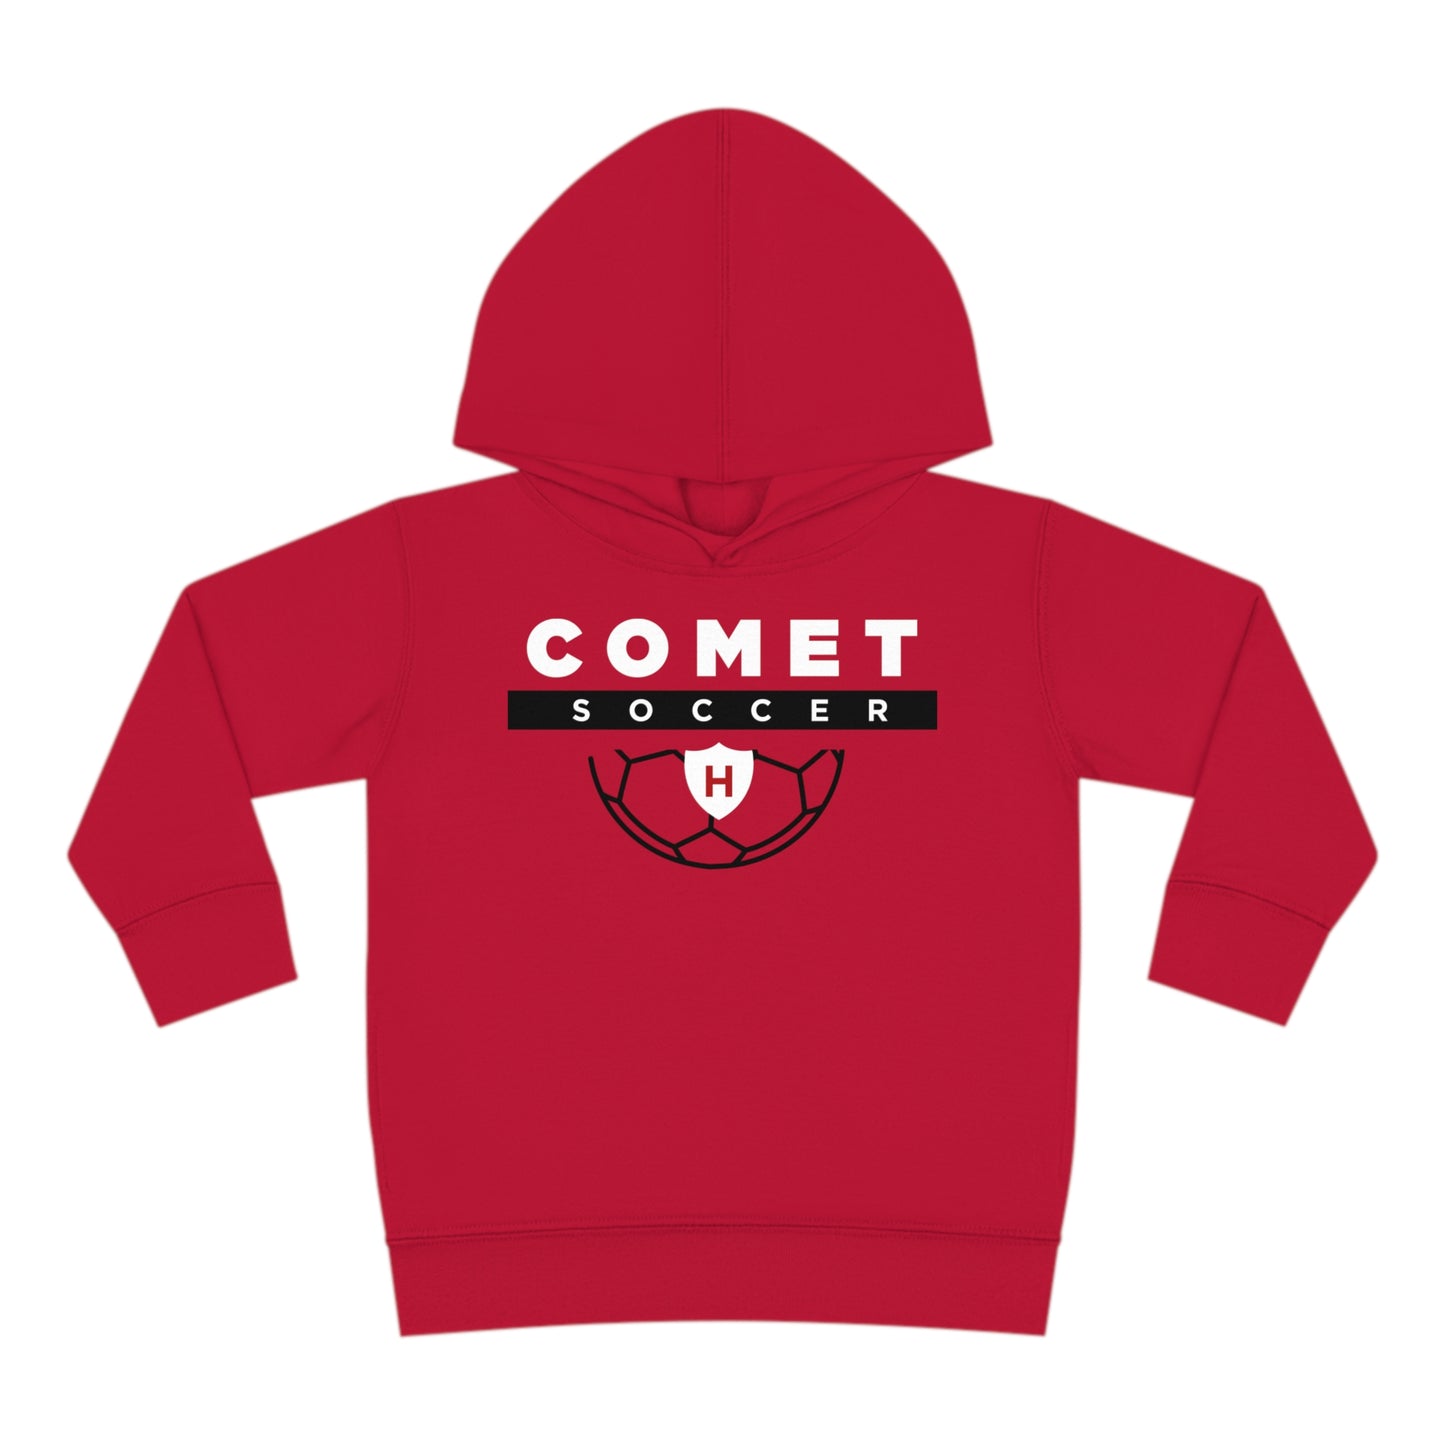 Comet Soccer - Toddler Pullover Fleece Hoodie